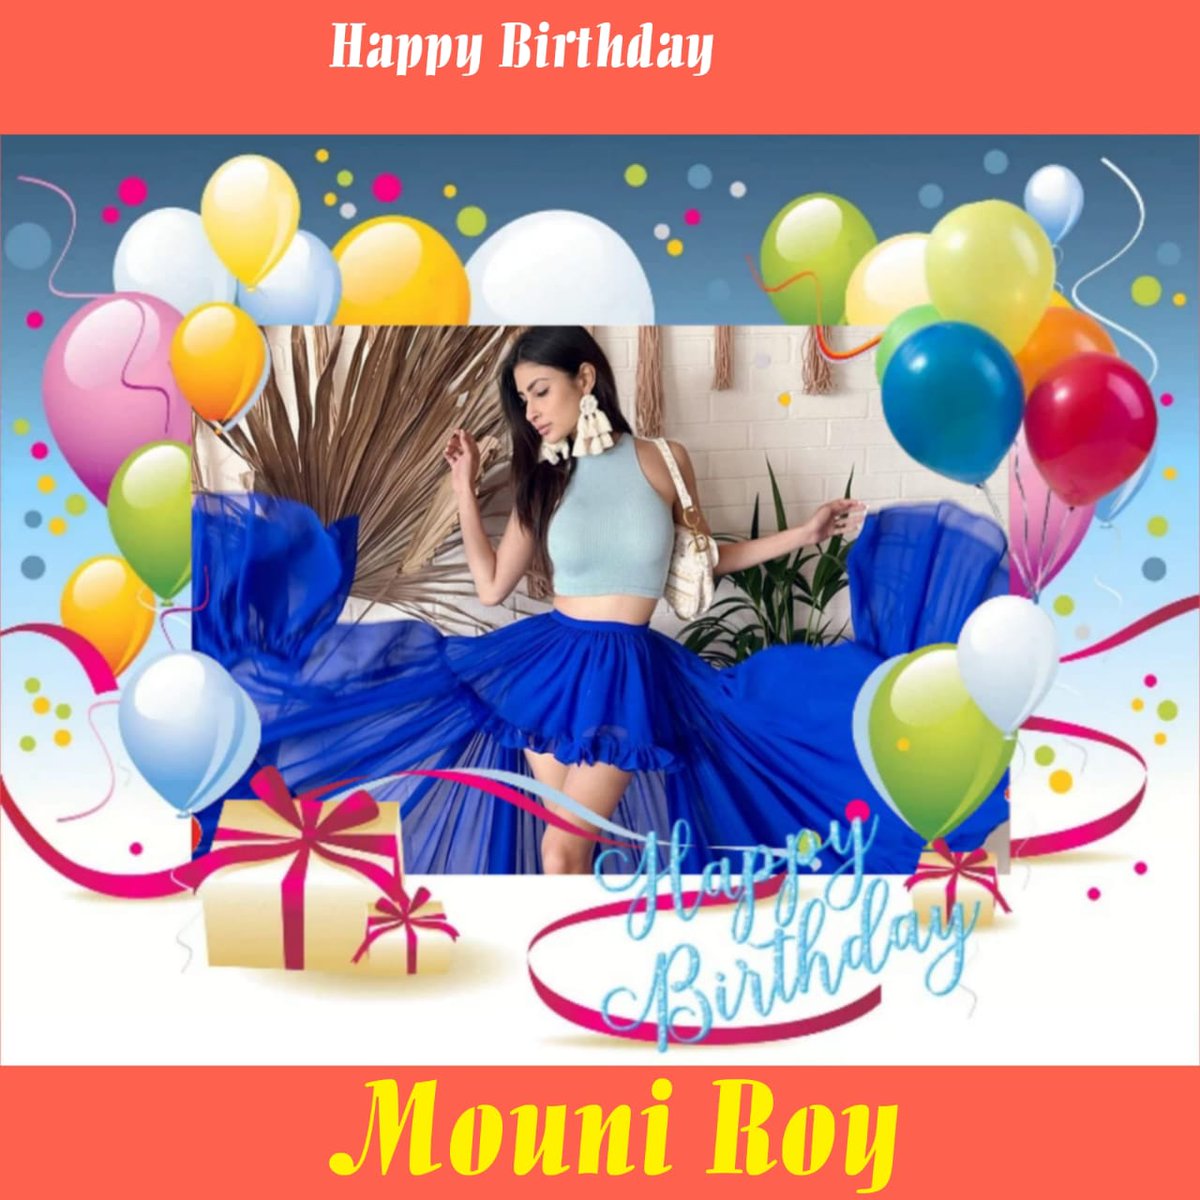 Happy Birthday Mouni Roy
#annapoorneswarivasanthakumar
#MouniRoyBirthday
#HBDMouniRoy
#MouniRoy